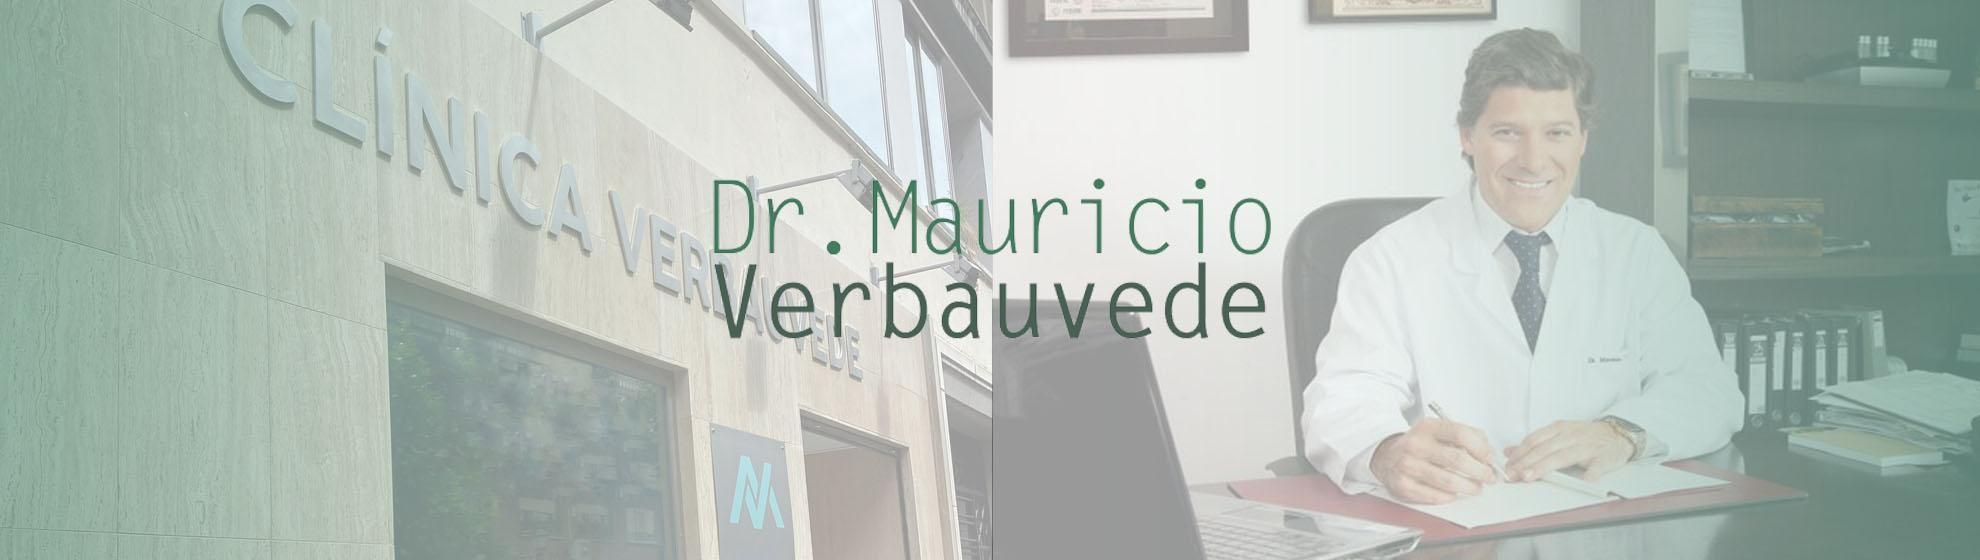 Dr. Mauricio Verbauvede